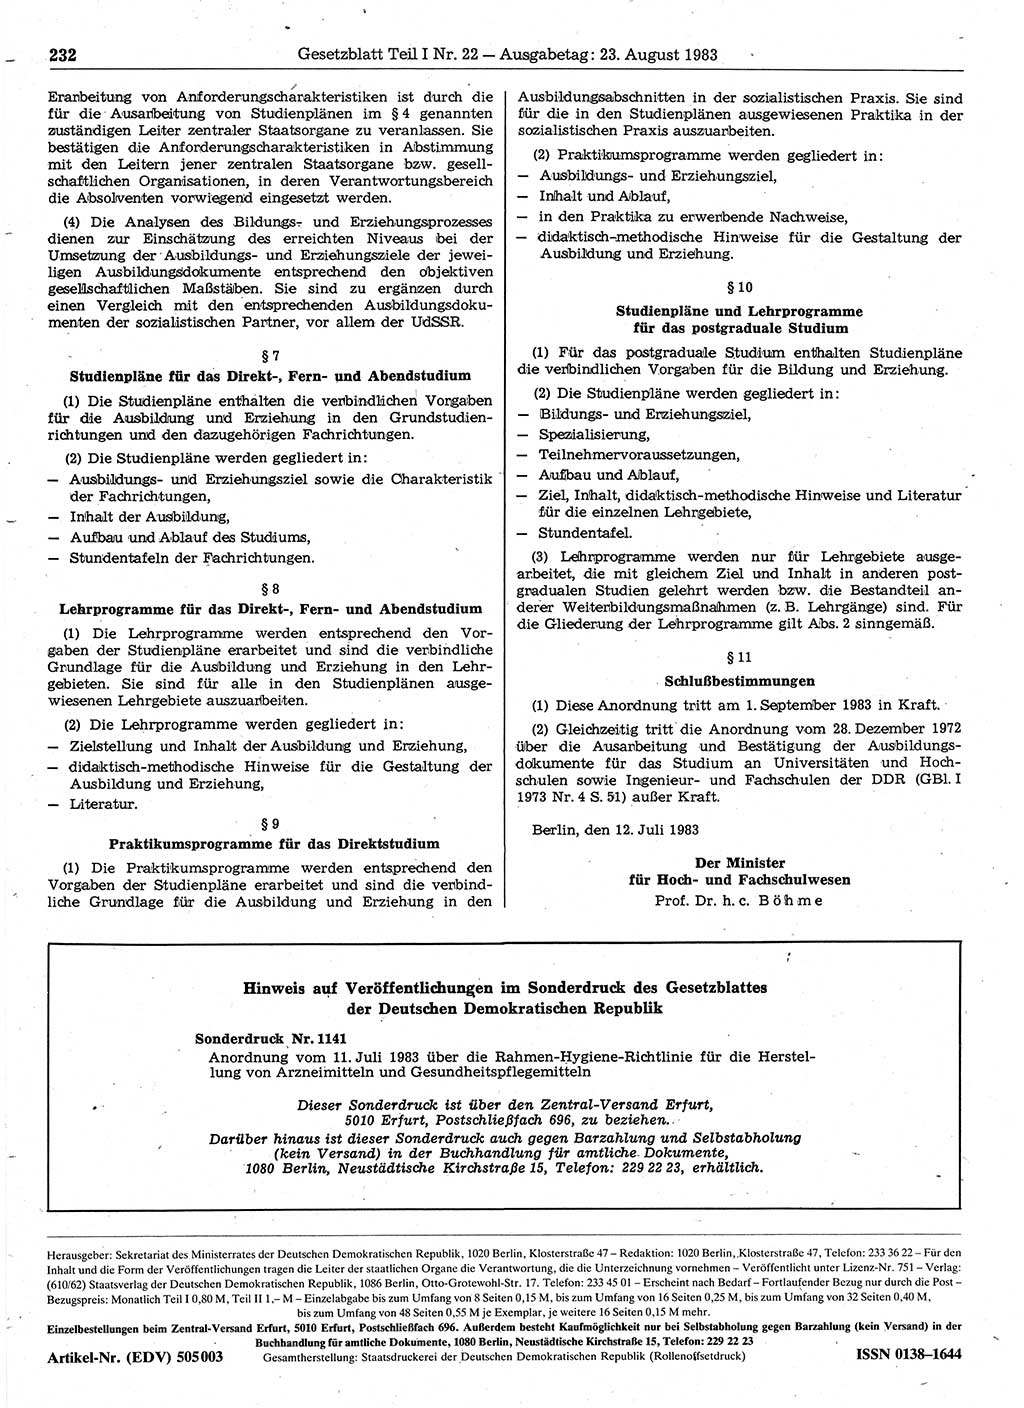 Gesetzblatt (GBl.) der Deutschen Demokratischen Republik (DDR) Teil Ⅰ 1983, Seite 232 (GBl. DDR Ⅰ 1983, S. 232)